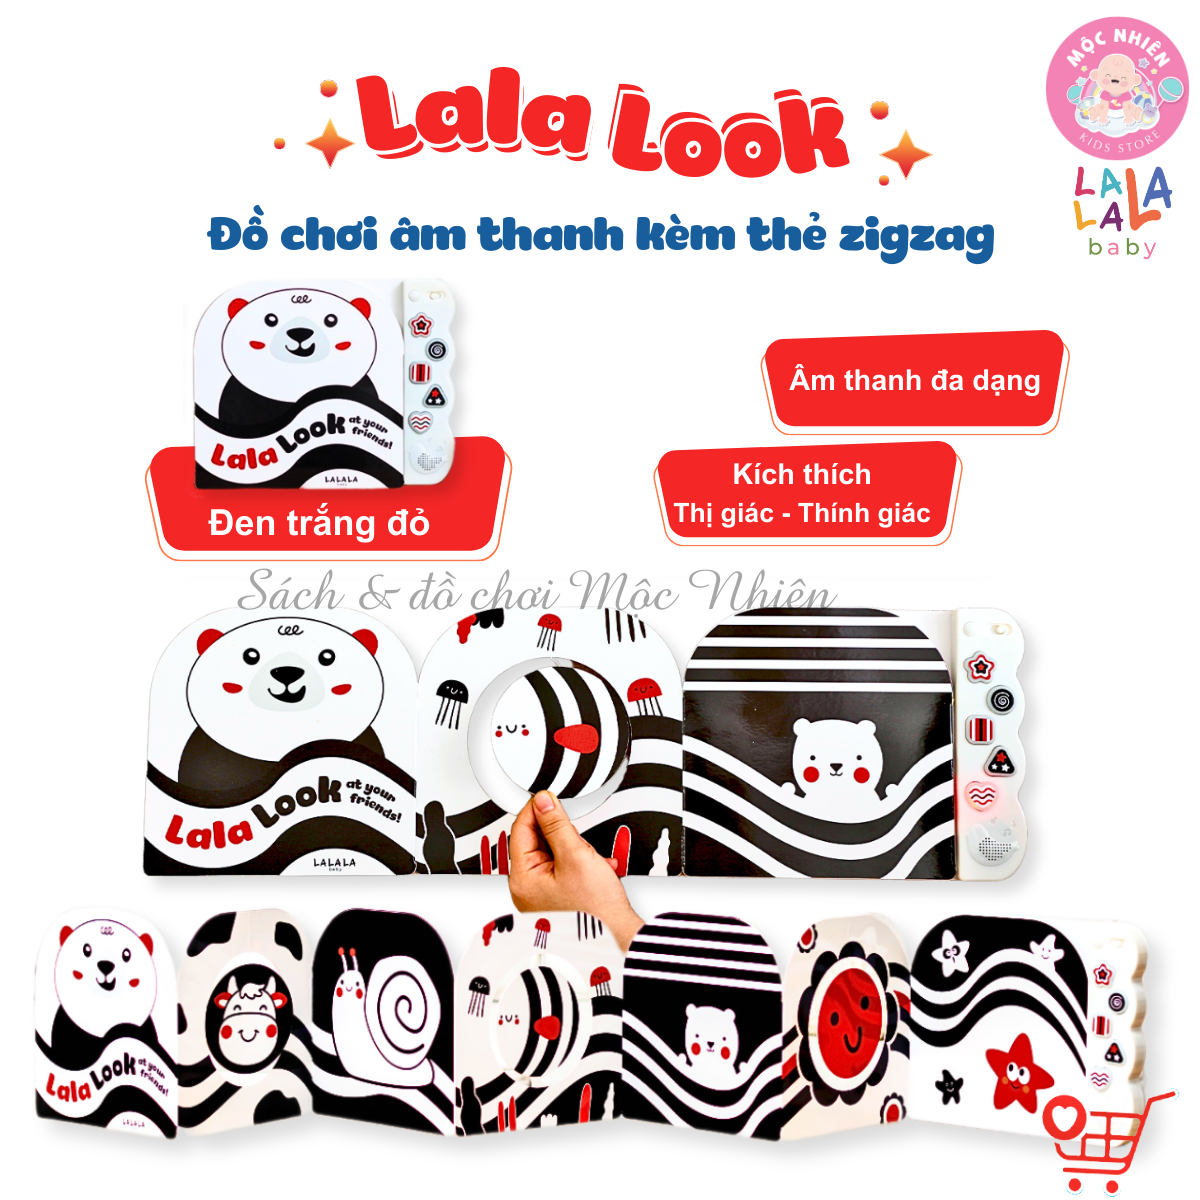 Sách âm thanh zigzag Lalalook - Đồ chơi kích thích thị giác, thính giác và não bộ phát triển cho bé sơ sinh - Lalala baby